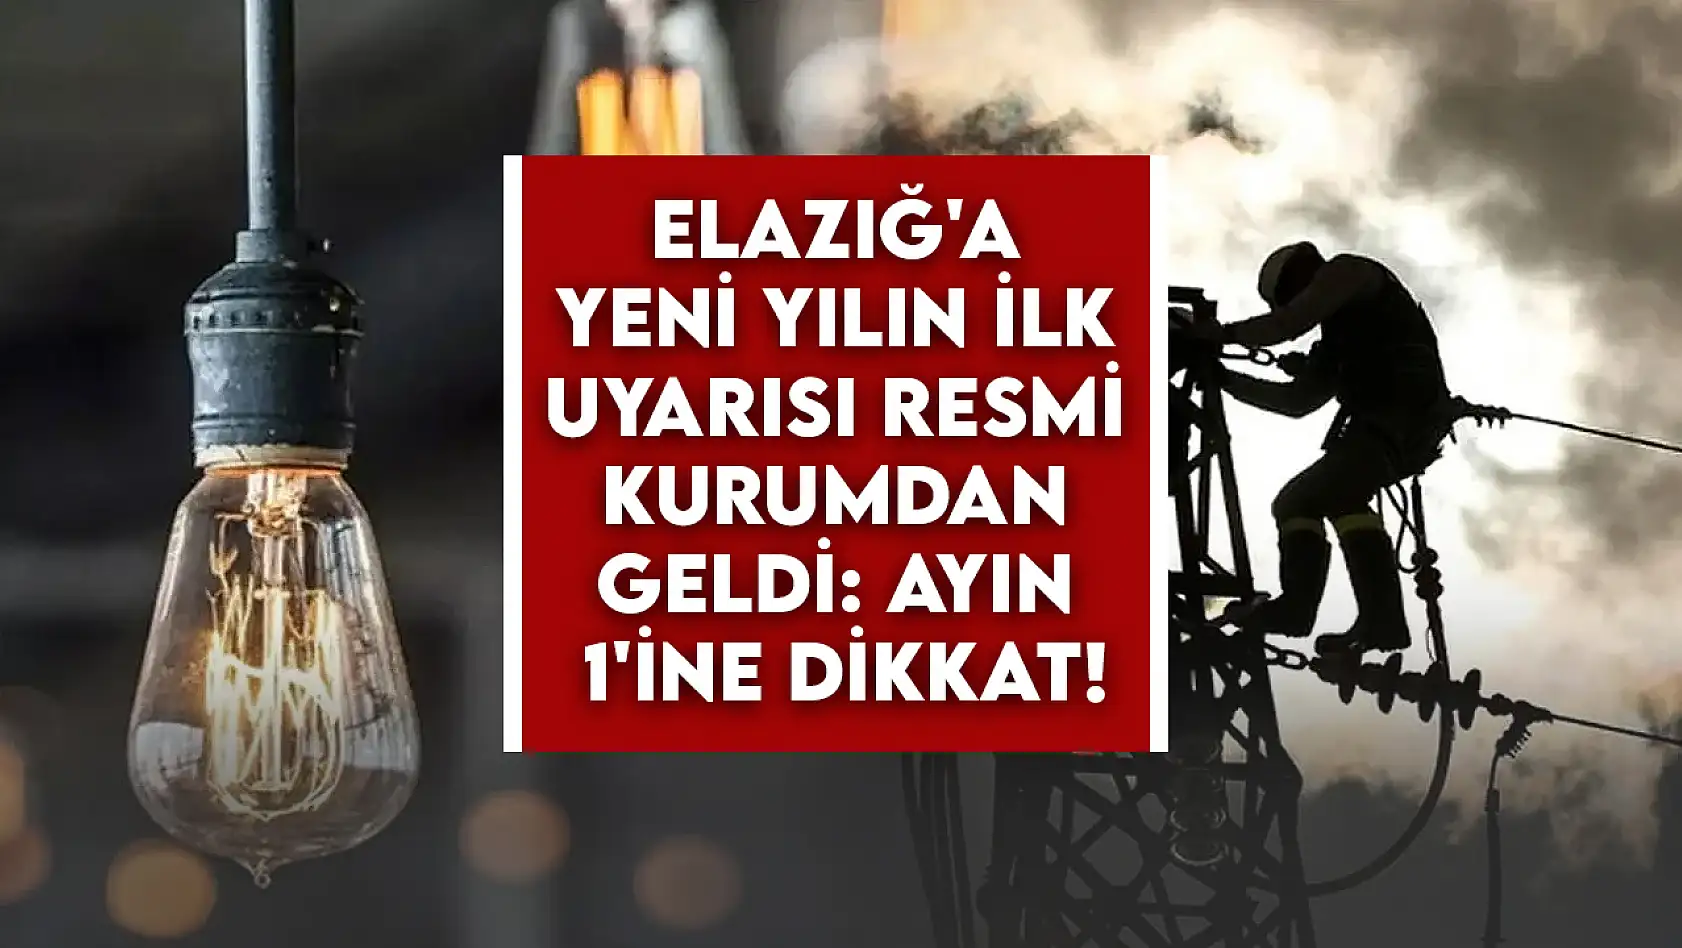 Elazığ'a yeni yılın ilk uyarısı resmi kurumdan geldi: Ayın 1'ine dikkat!